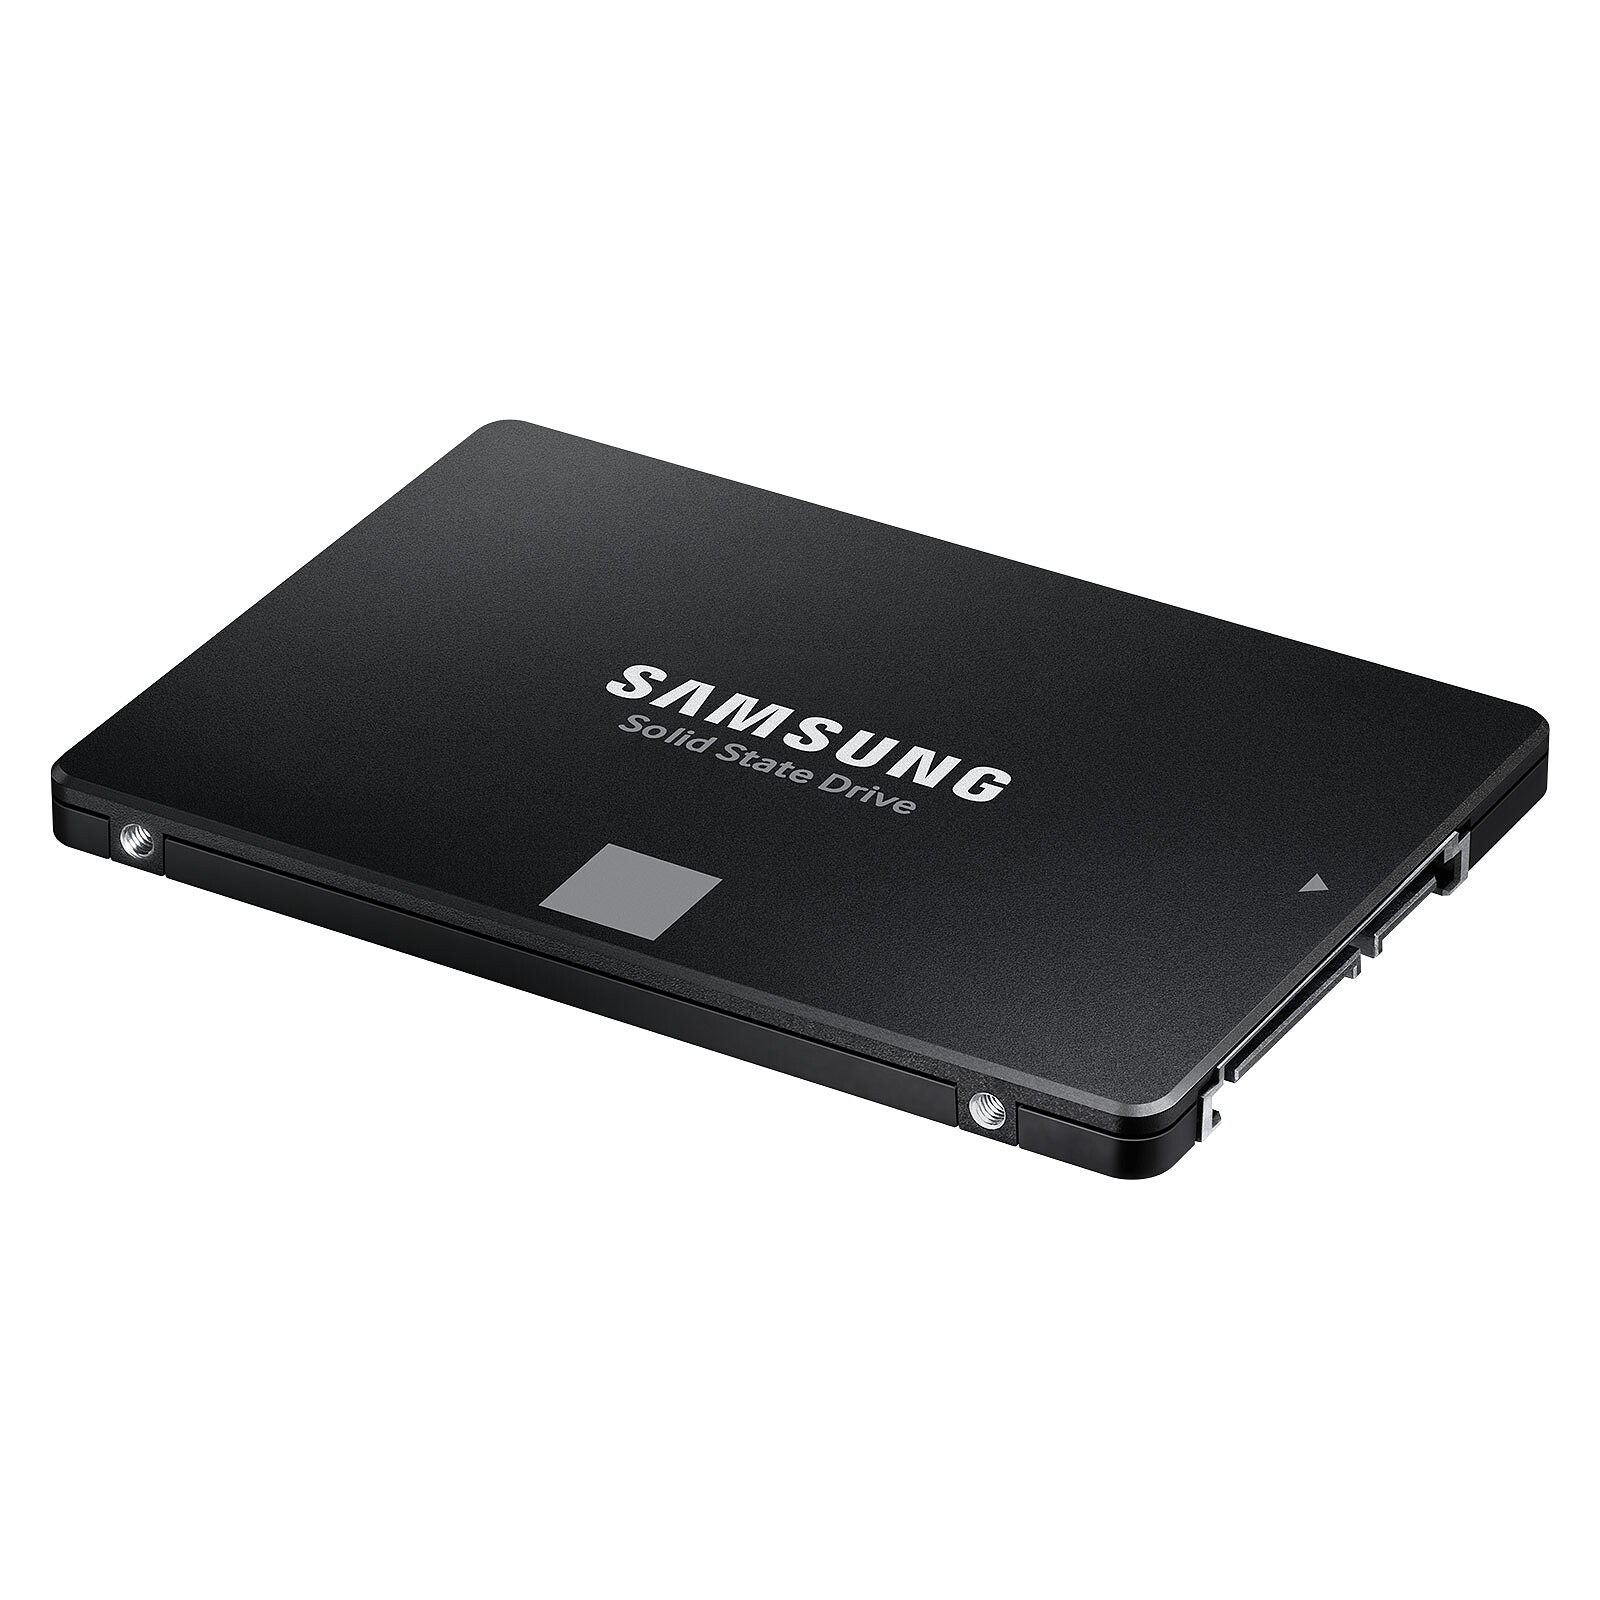 Disque dur SSD 500Go ultra rapide installé et monté